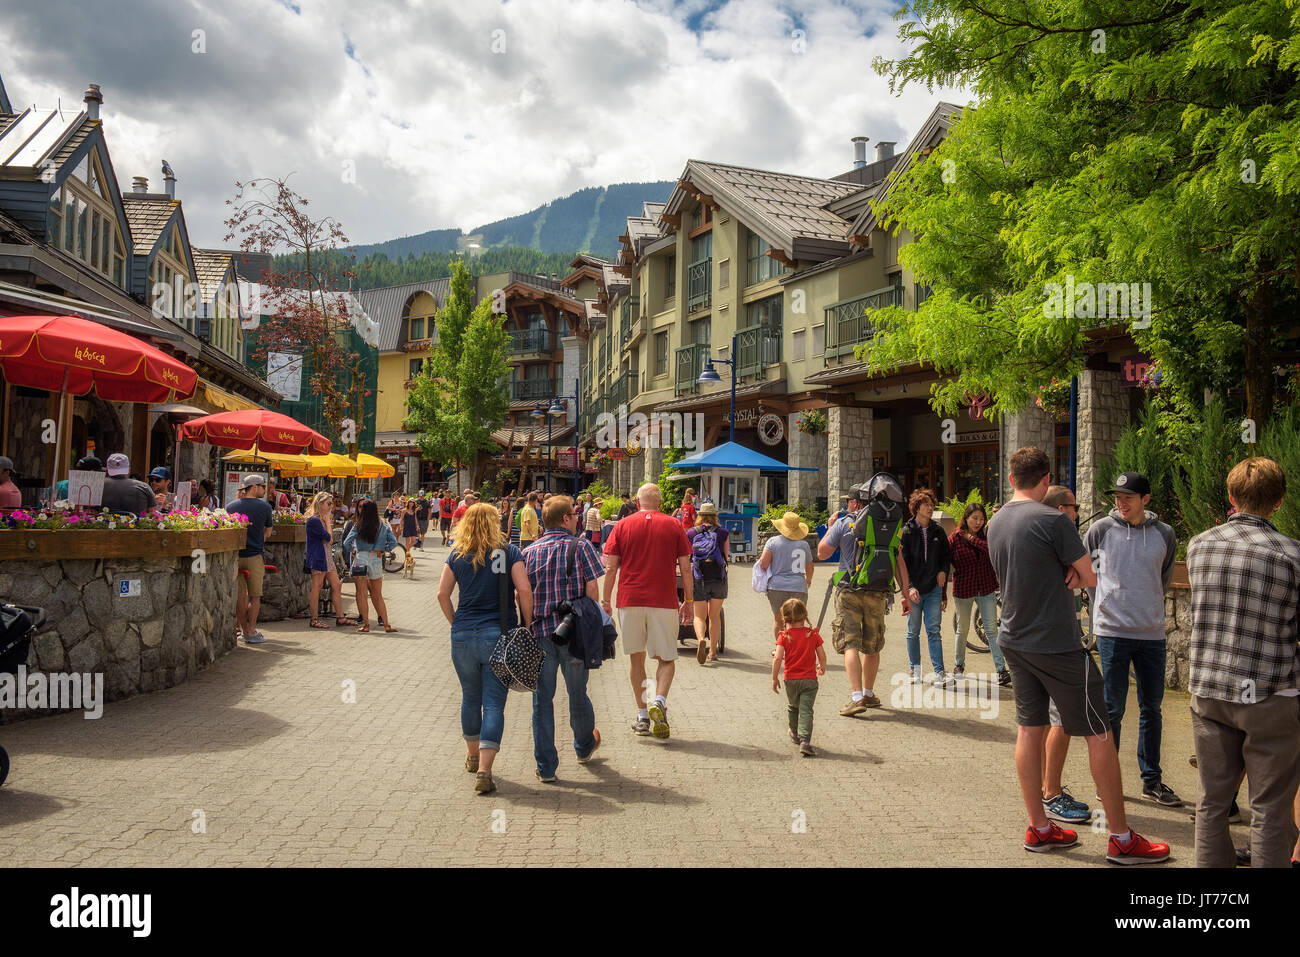 WHISTLER, British Columbia, Canada - luglio 2, 2017 : Scenic street view con molti turisti nel villaggio di Whistler. Whistler è una località canadese città vis Foto Stock